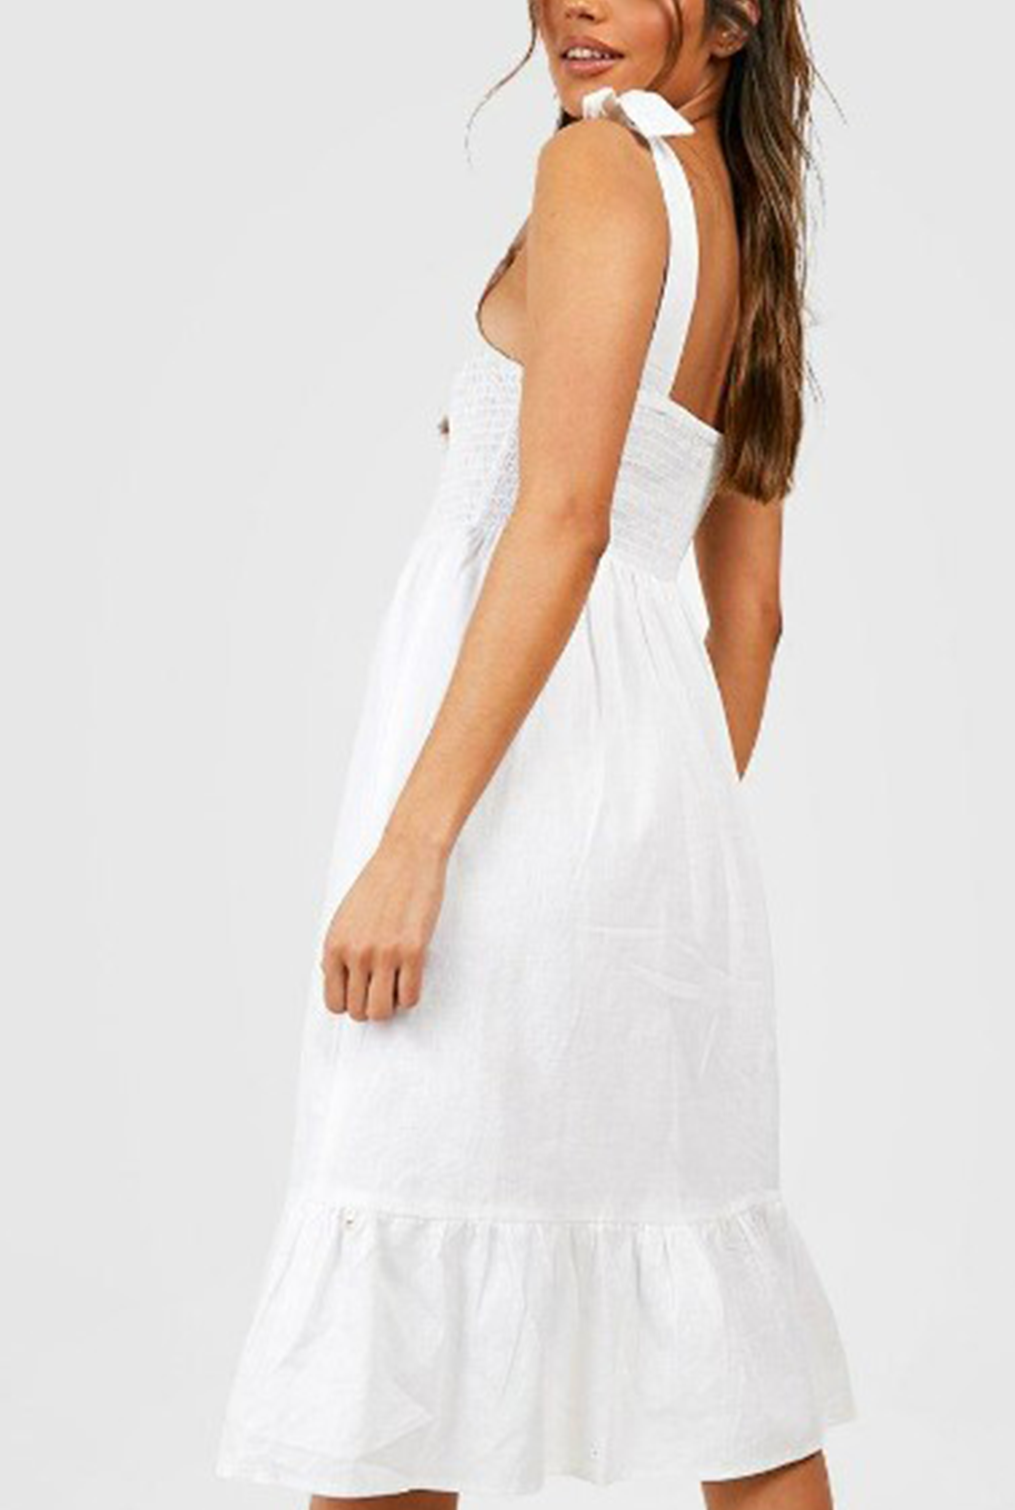 Meld White Dress